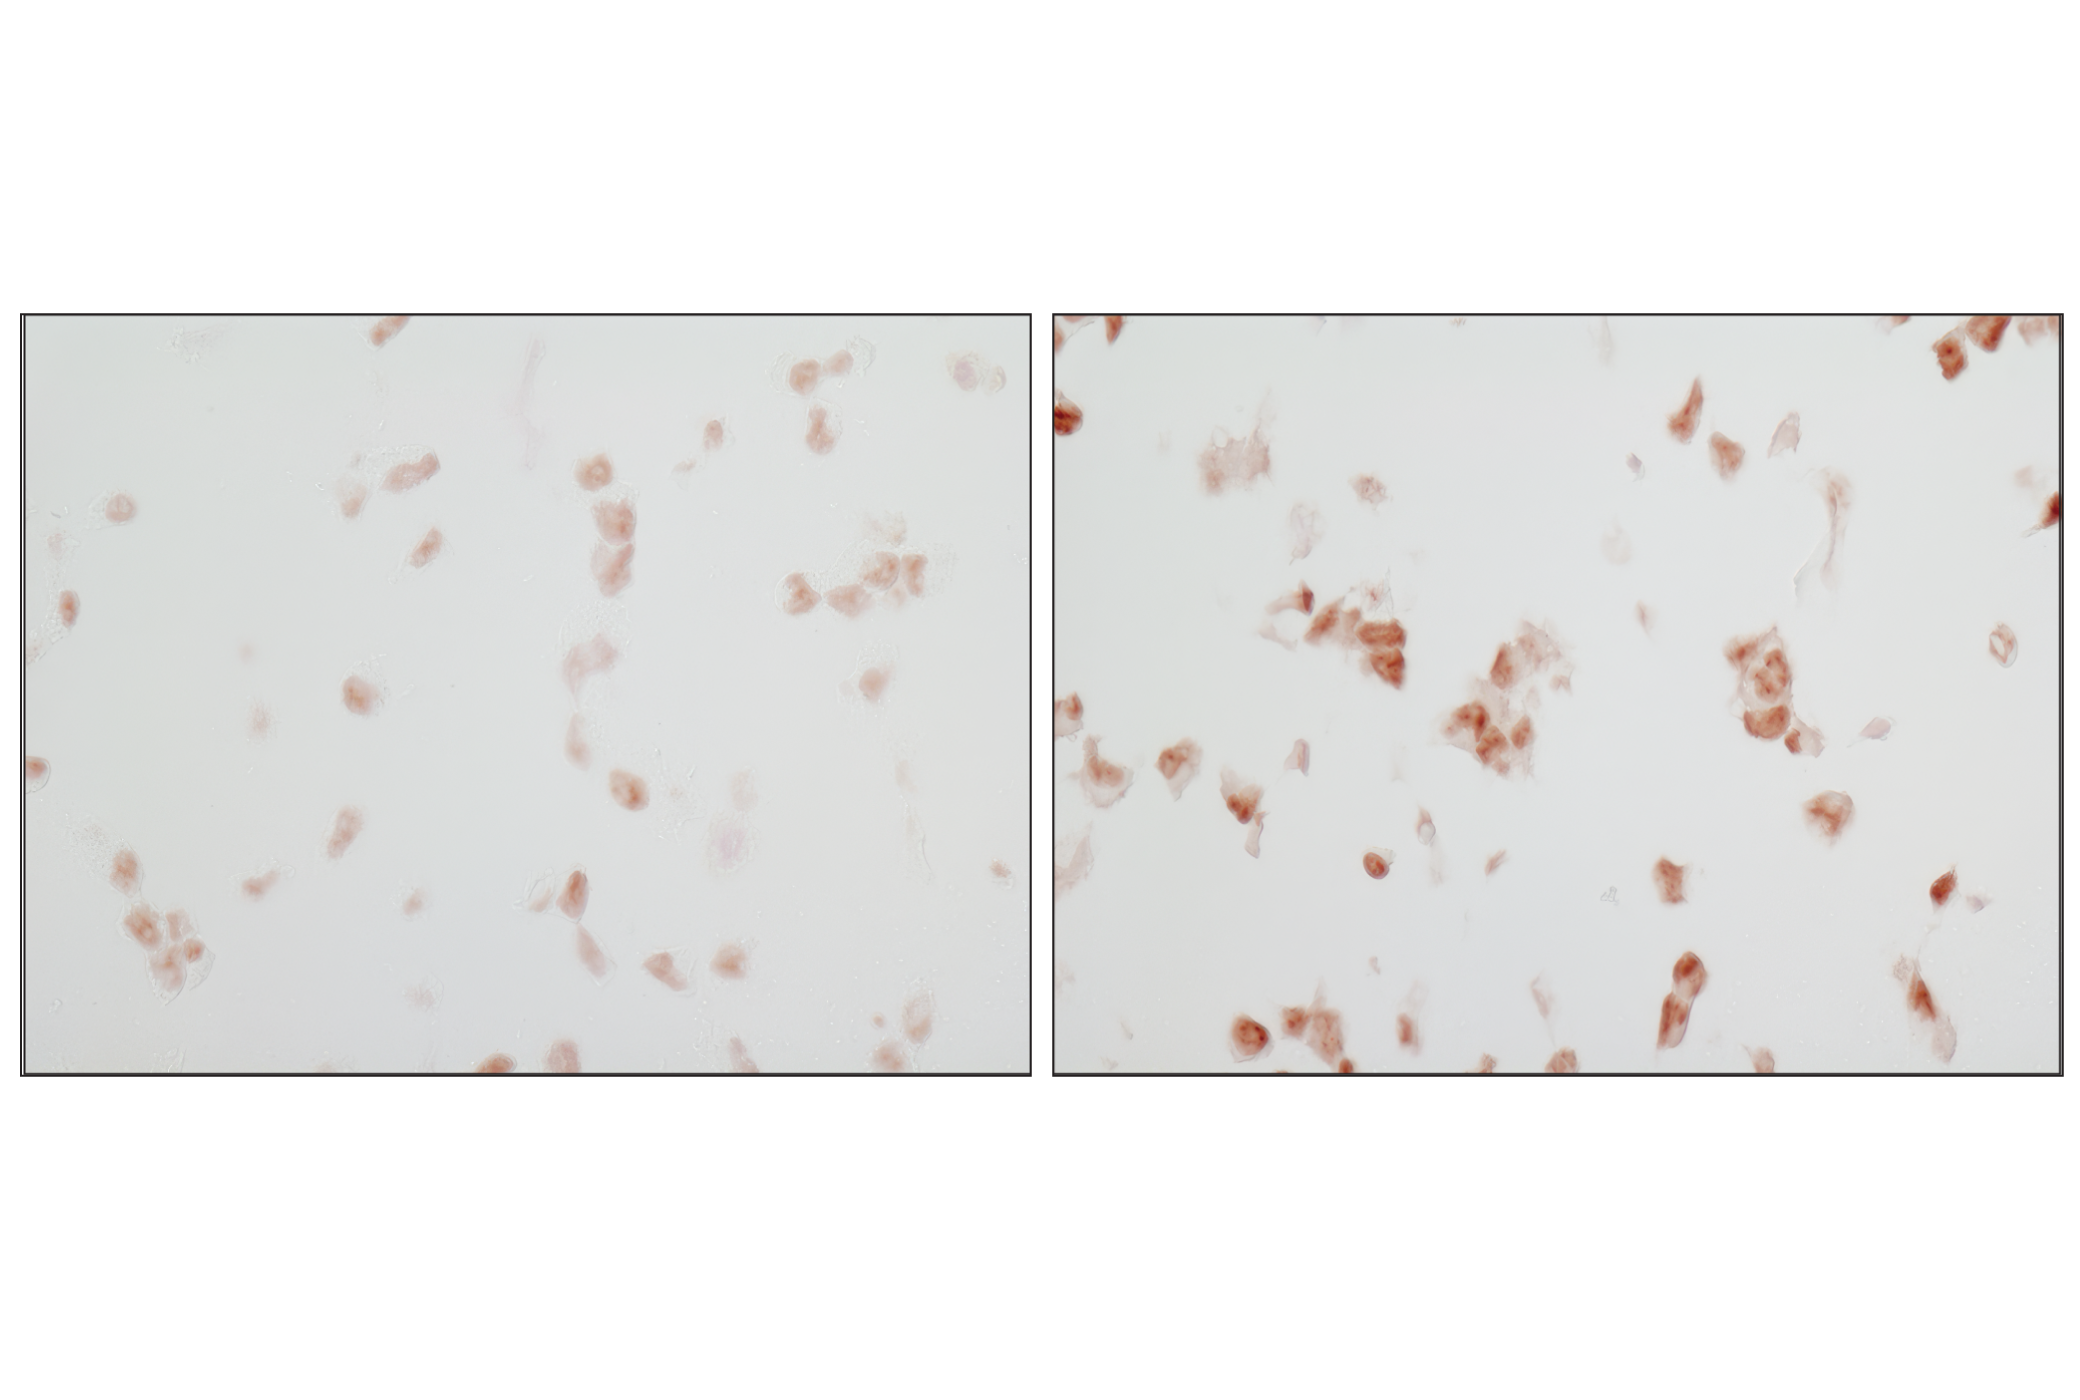  Image 36: Phospho-Tau (Ser214/T217) Signaling Antibody Sampler Kit